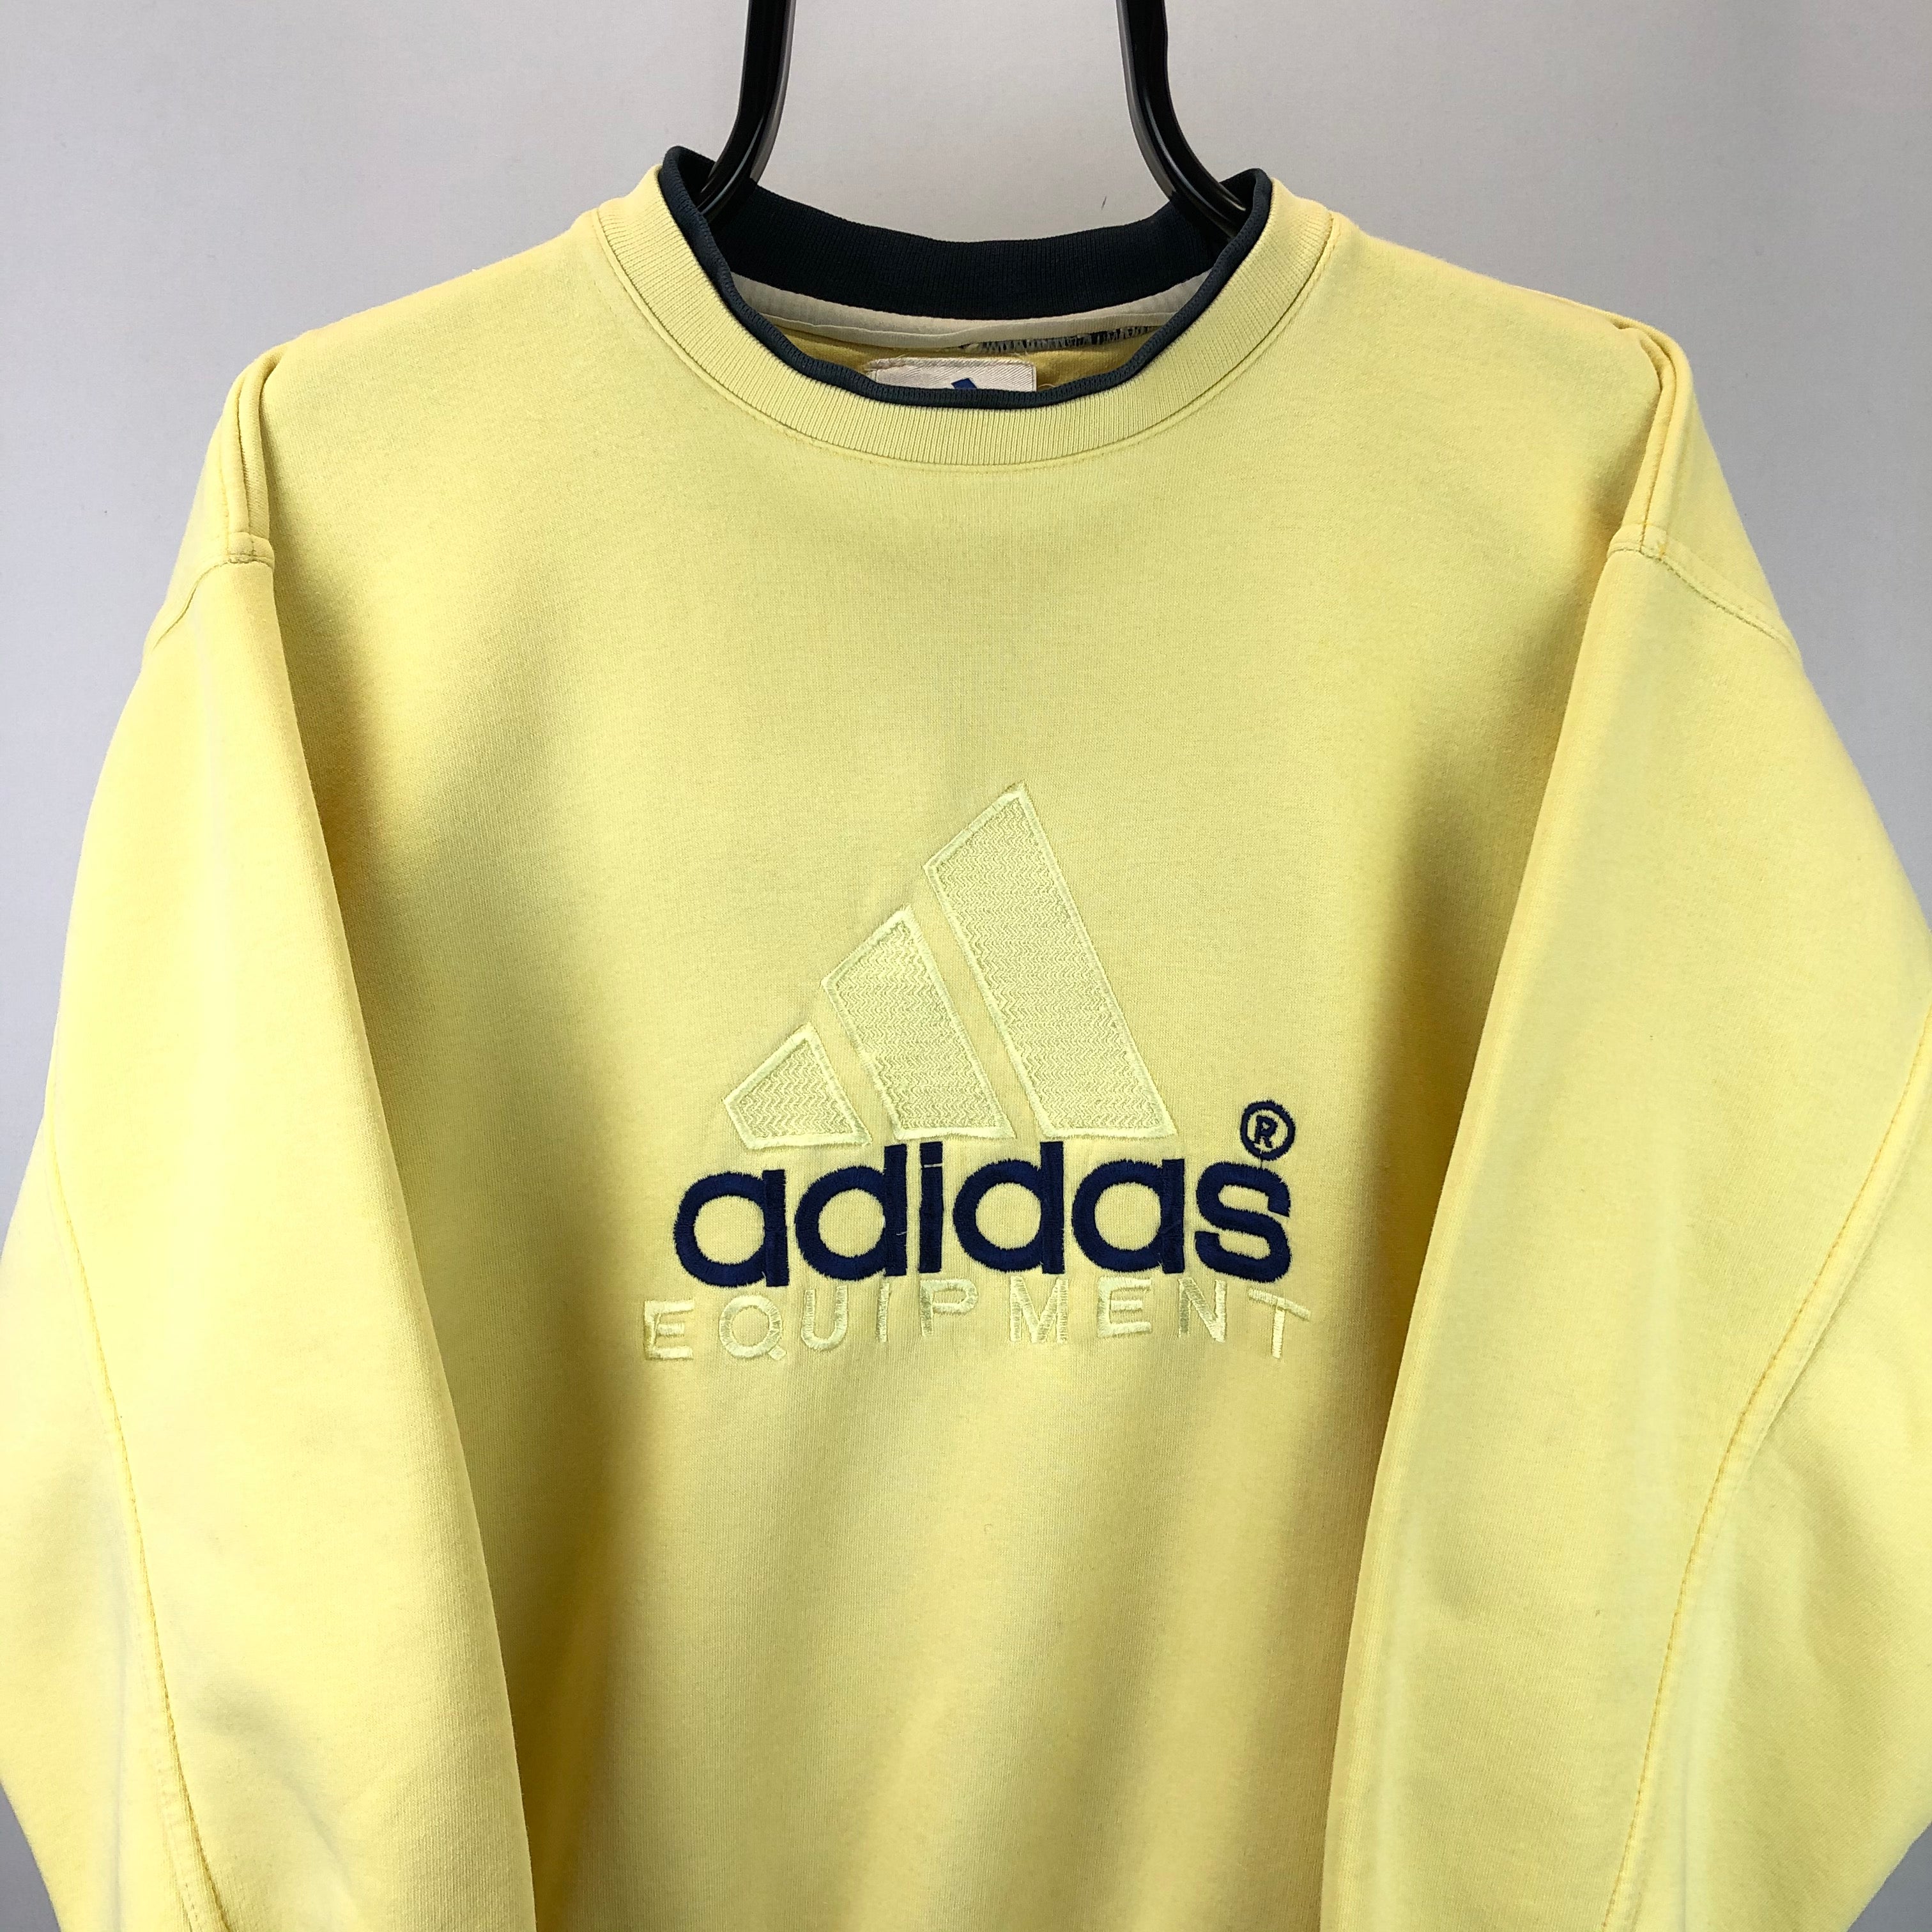 Vintage 90s Adidas Equipment Sweatshirt in Yellow - Men's Medium/Women ...